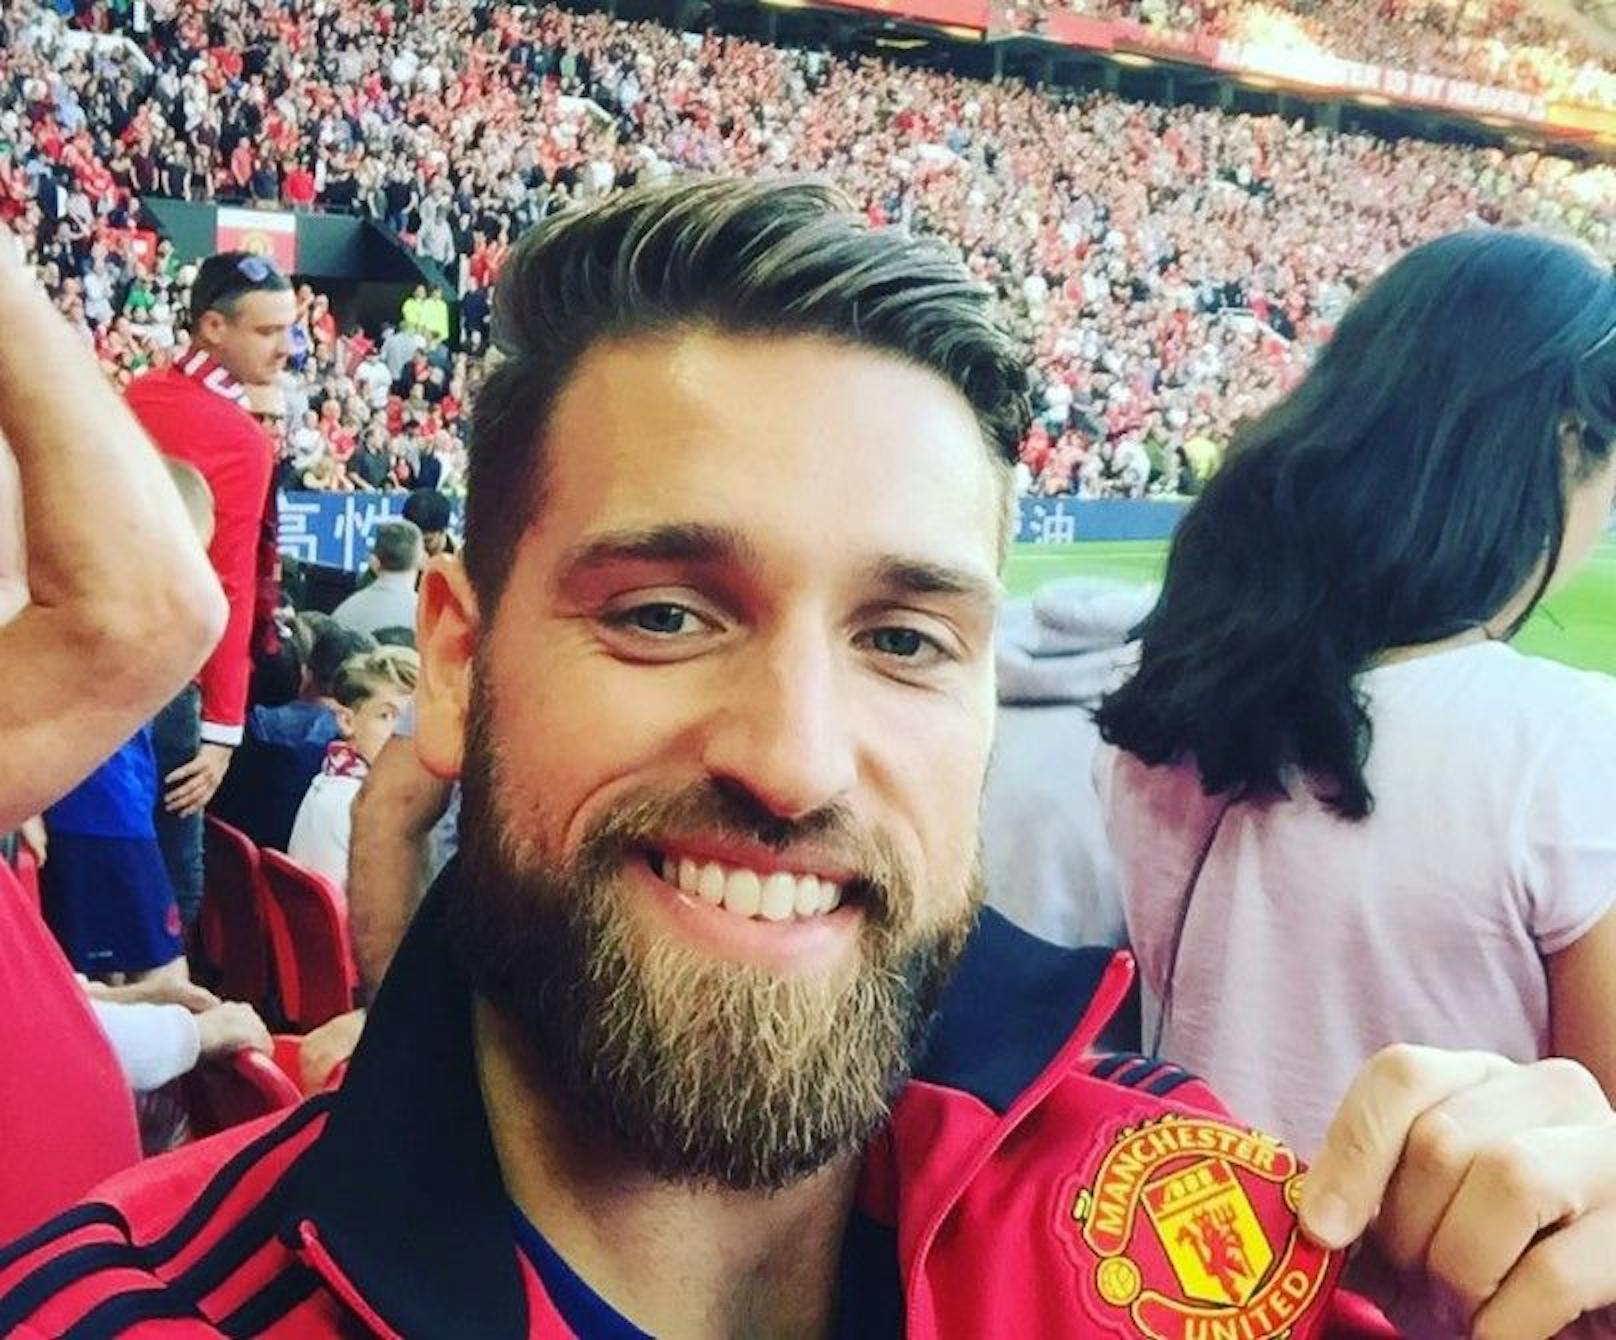 Der neue SPOÖ-Manager ist Fußballfan, postet sein Leben auf Instagram.